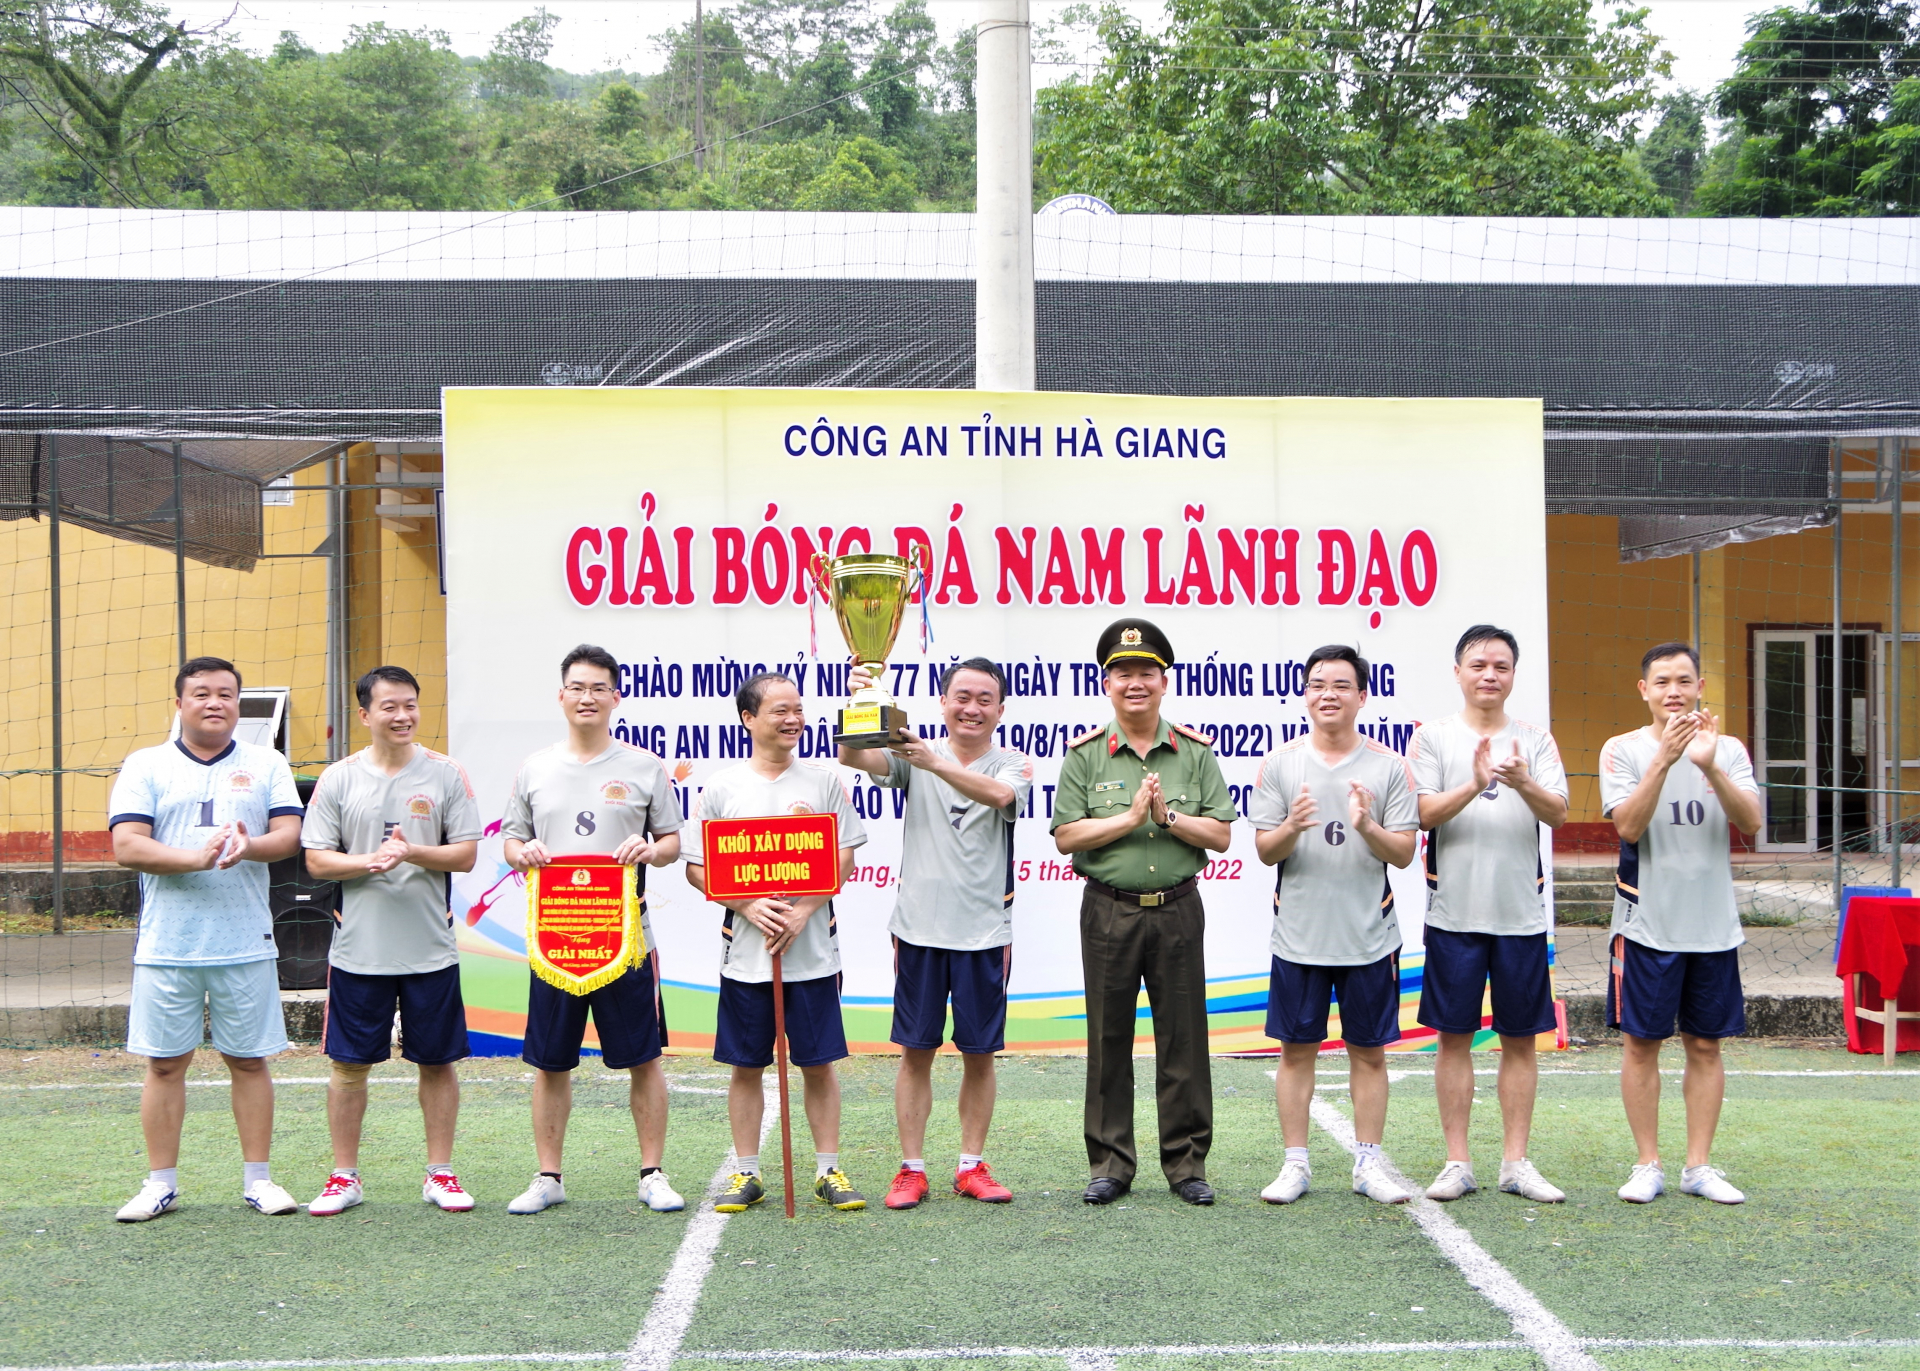 Lãnh đạo Công an tỉnh trao cúp vô địch cho đội tuyển khối Xây dựng lực lượng.